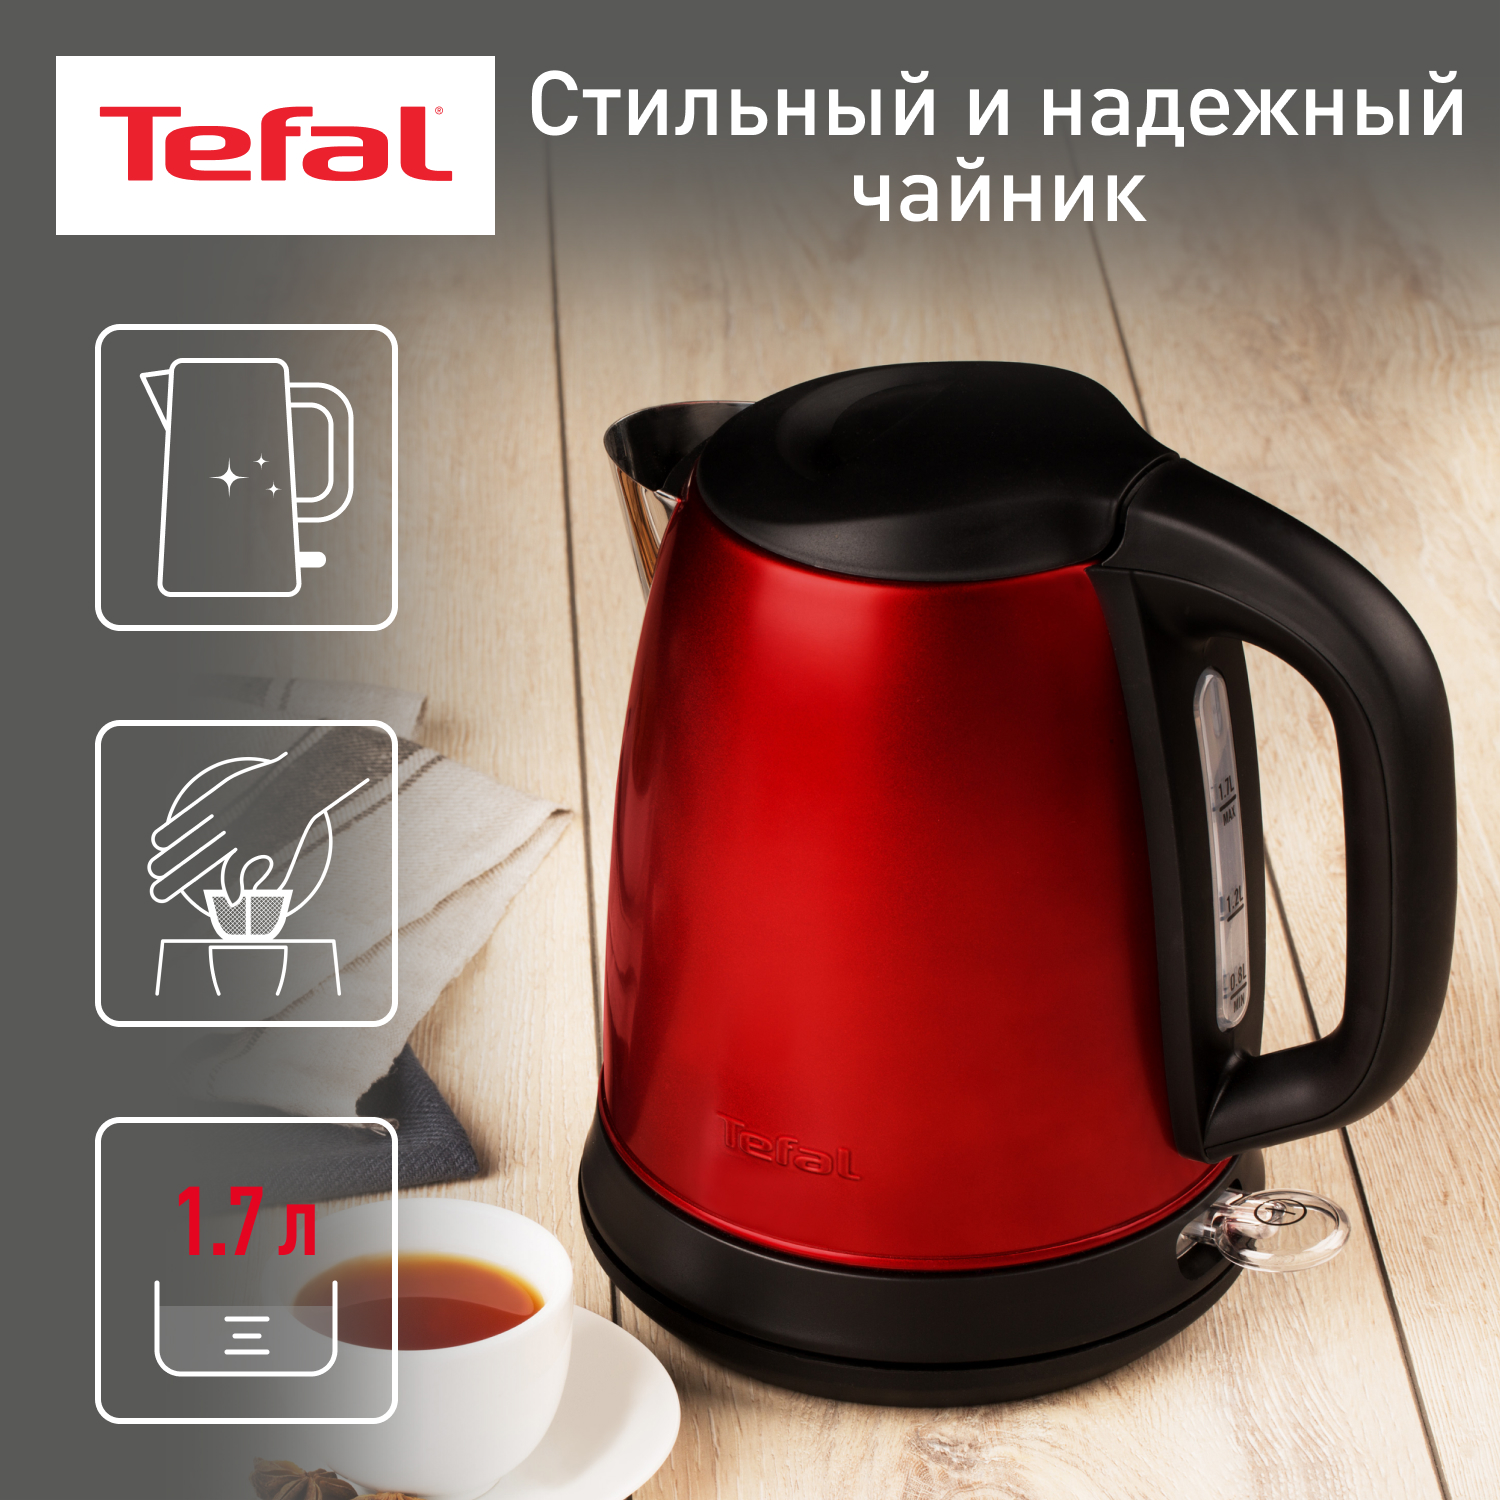 Чайник электрический Tefal Confidence KI270530, 1.7 л, красный/черный фильтр tefal zr009004